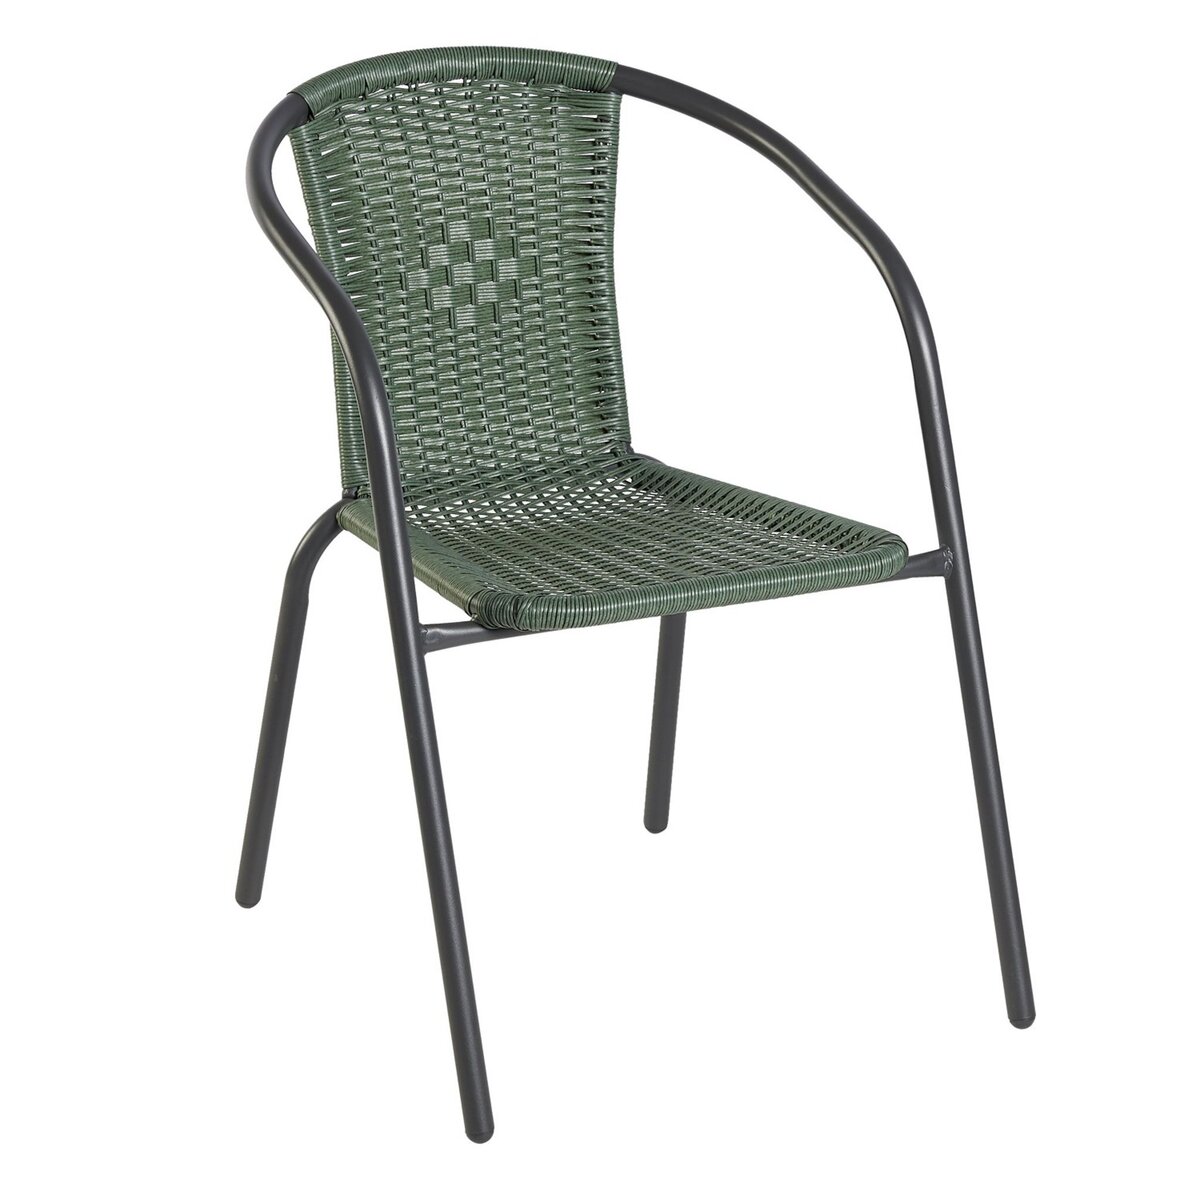 Chaise de jardin - Acier/rotin - Vert - BISTROT